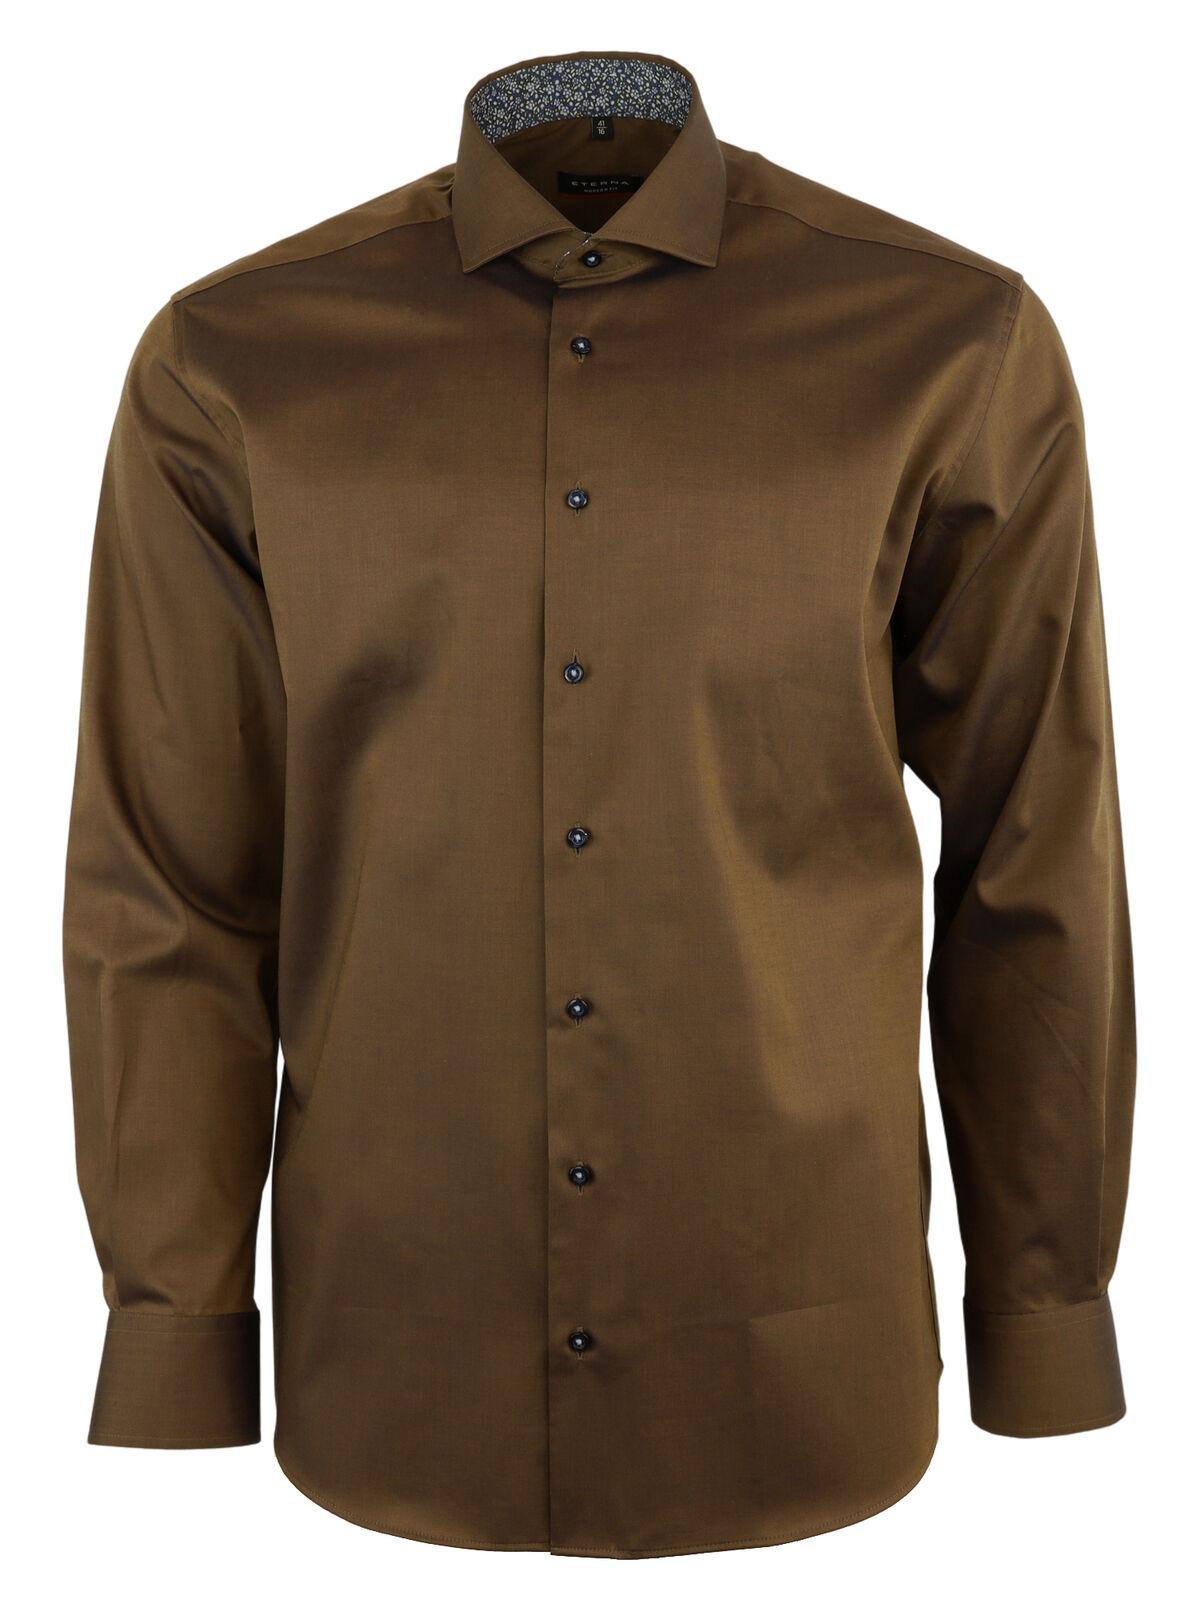 Мужская рубашка ETERNA, коричневая, цвет коричневый, размер 50 - фото 3